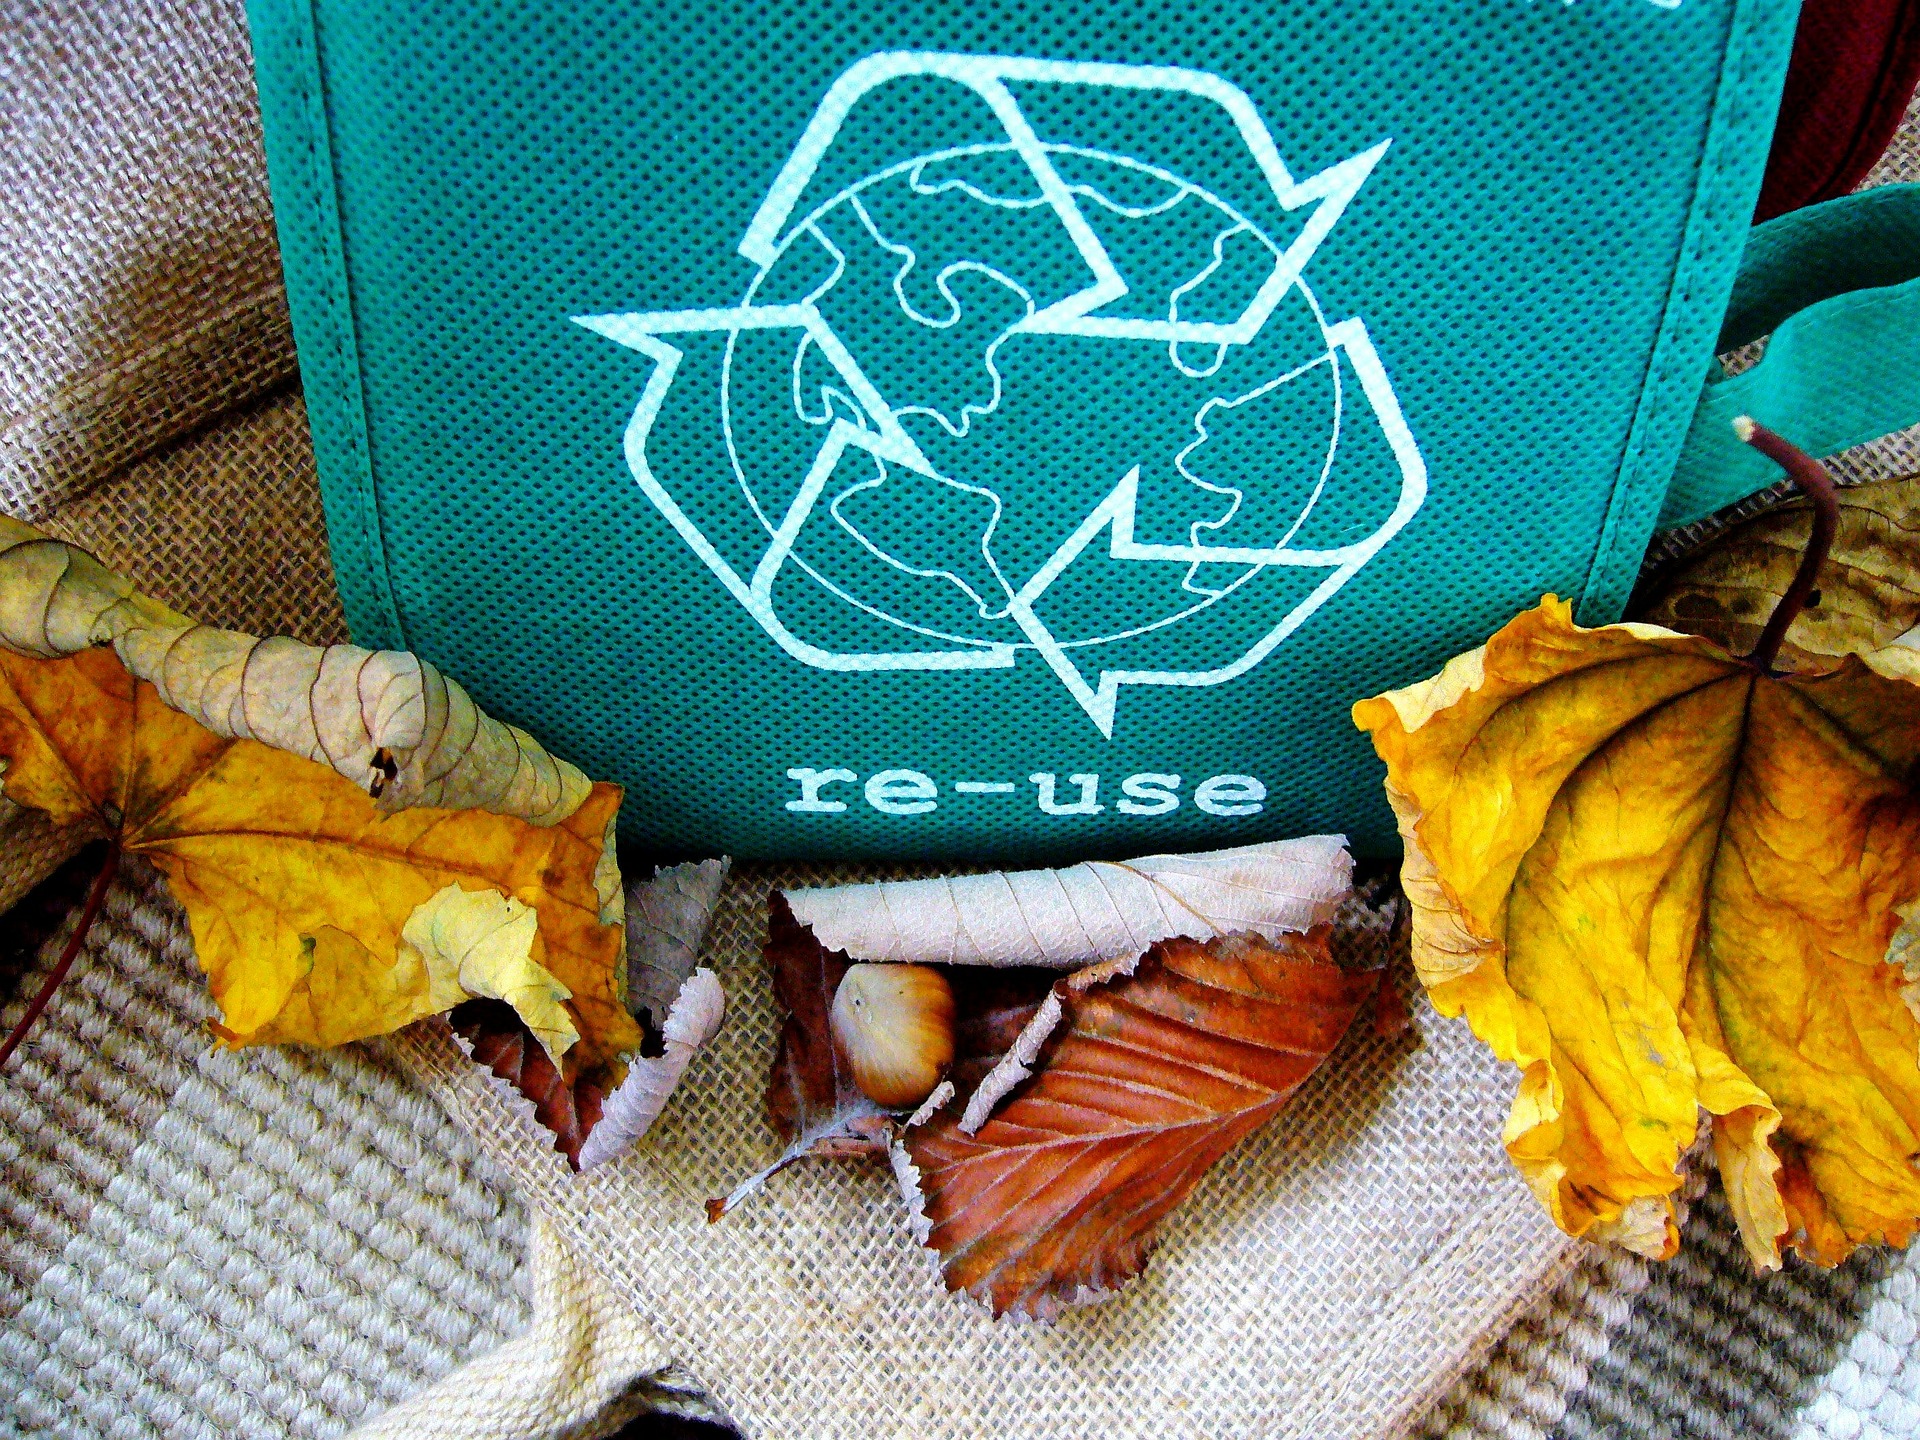 riciclo-rifiuti